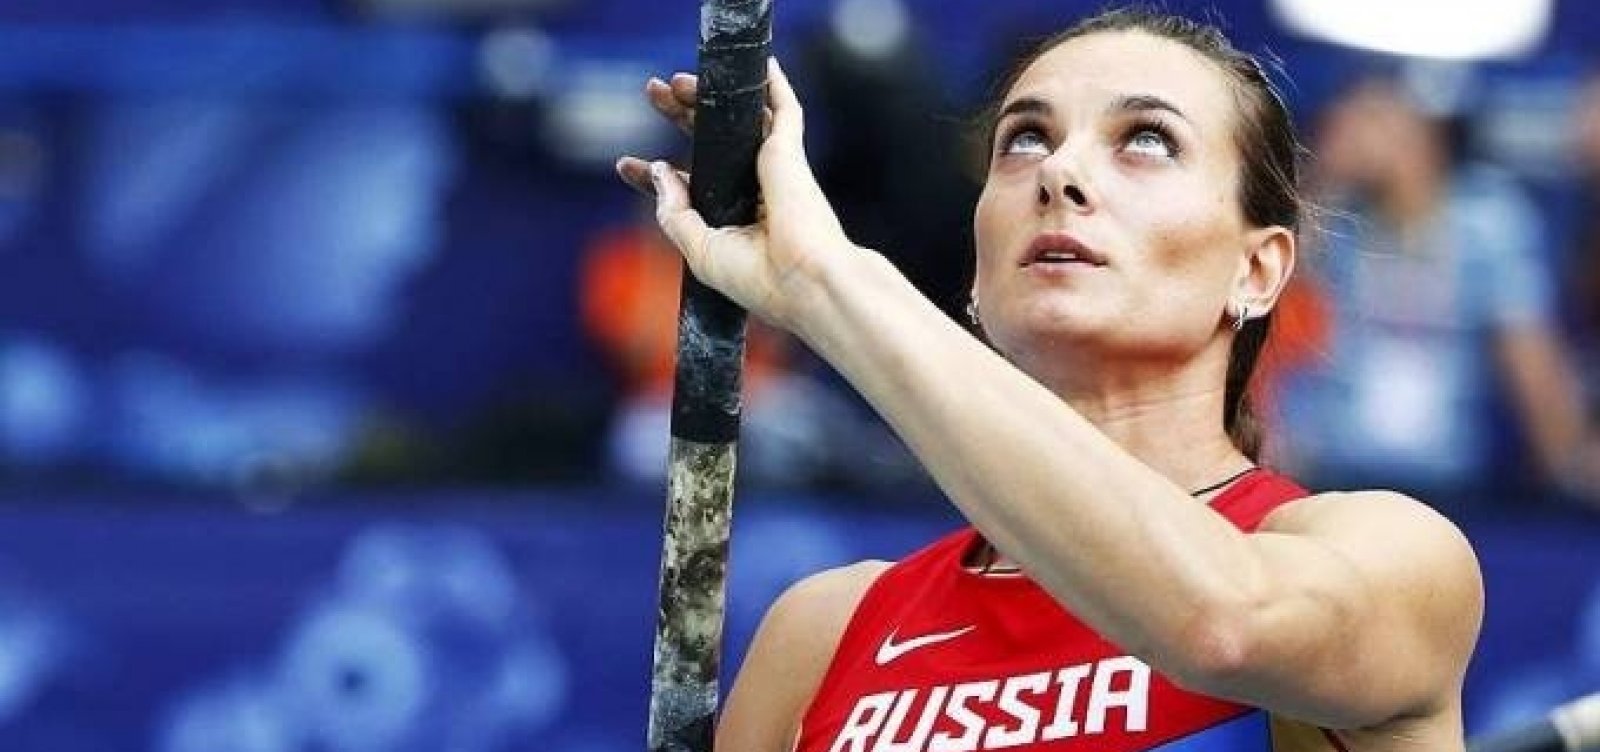 Federação de Atletismo da Rússia segue suspensa até 2019